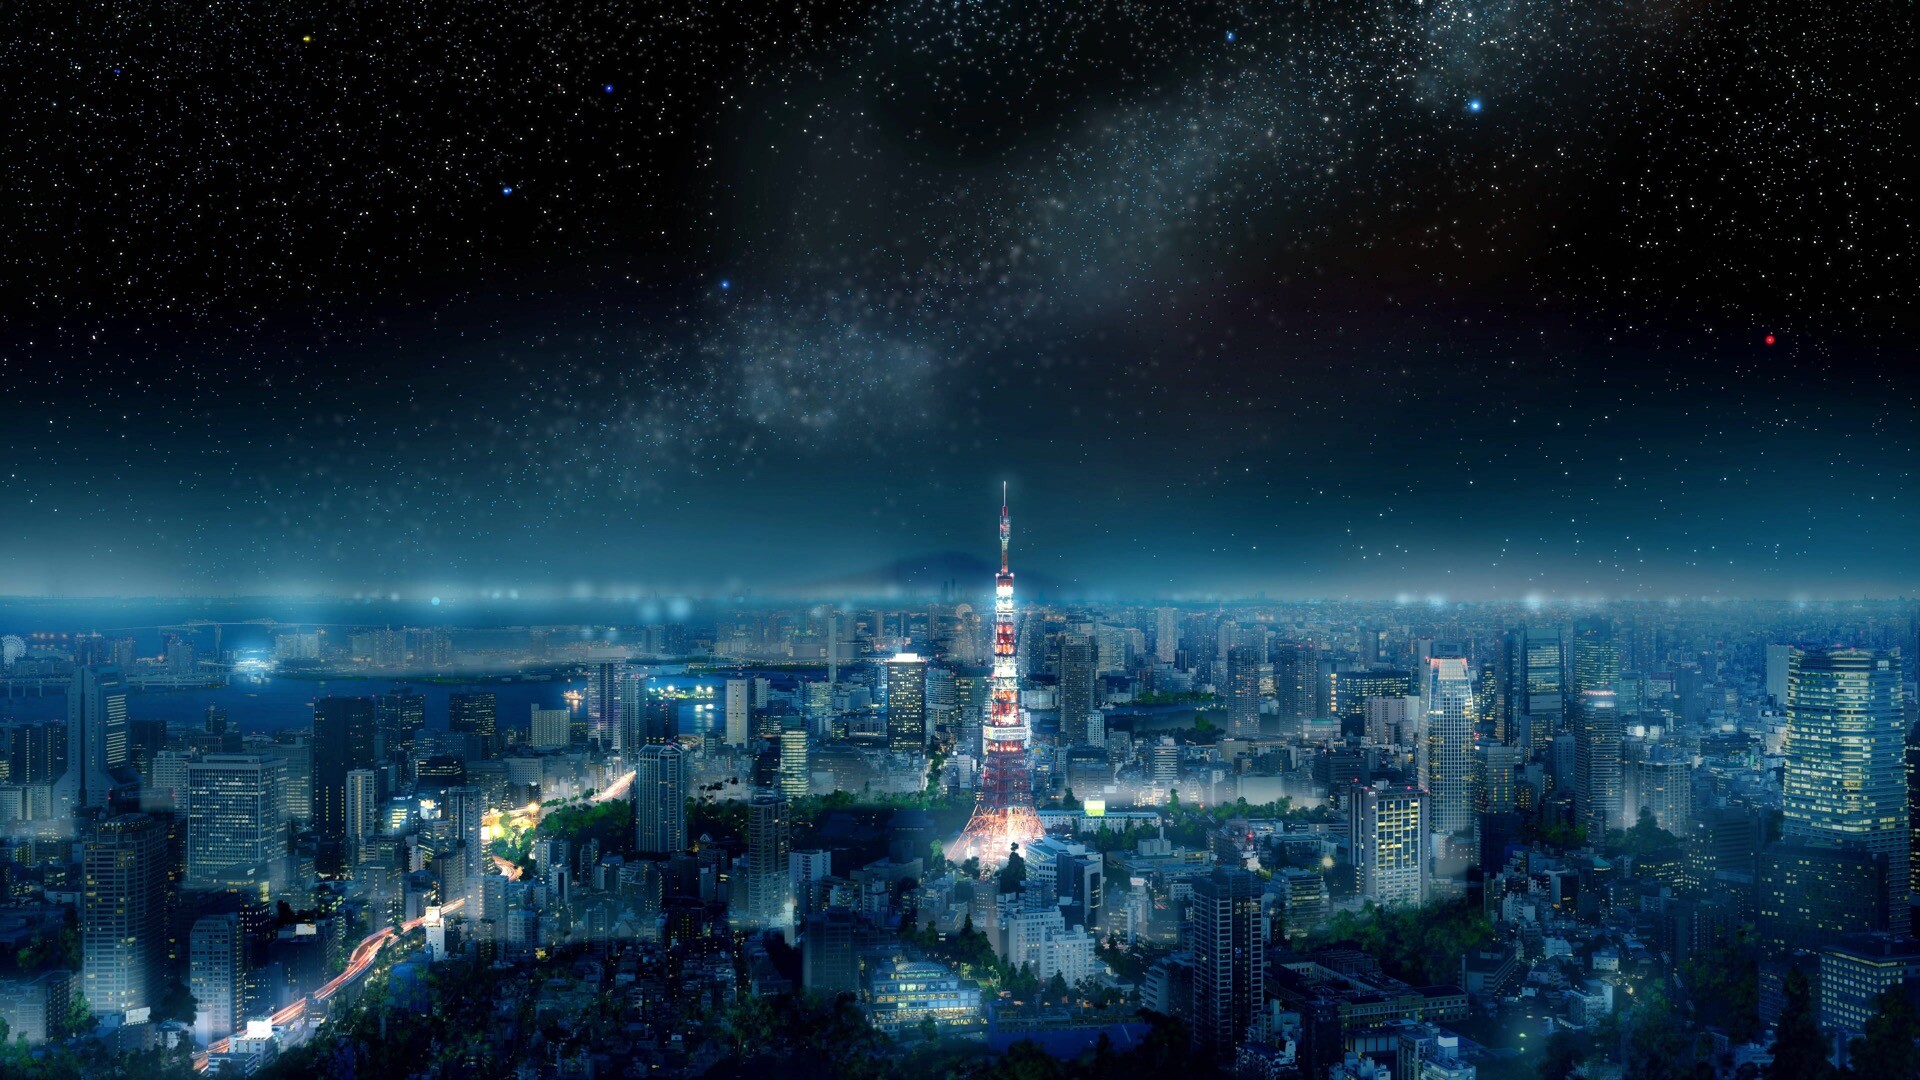 东京铁塔mac高清壁纸 M0 的博客 Csdn博客